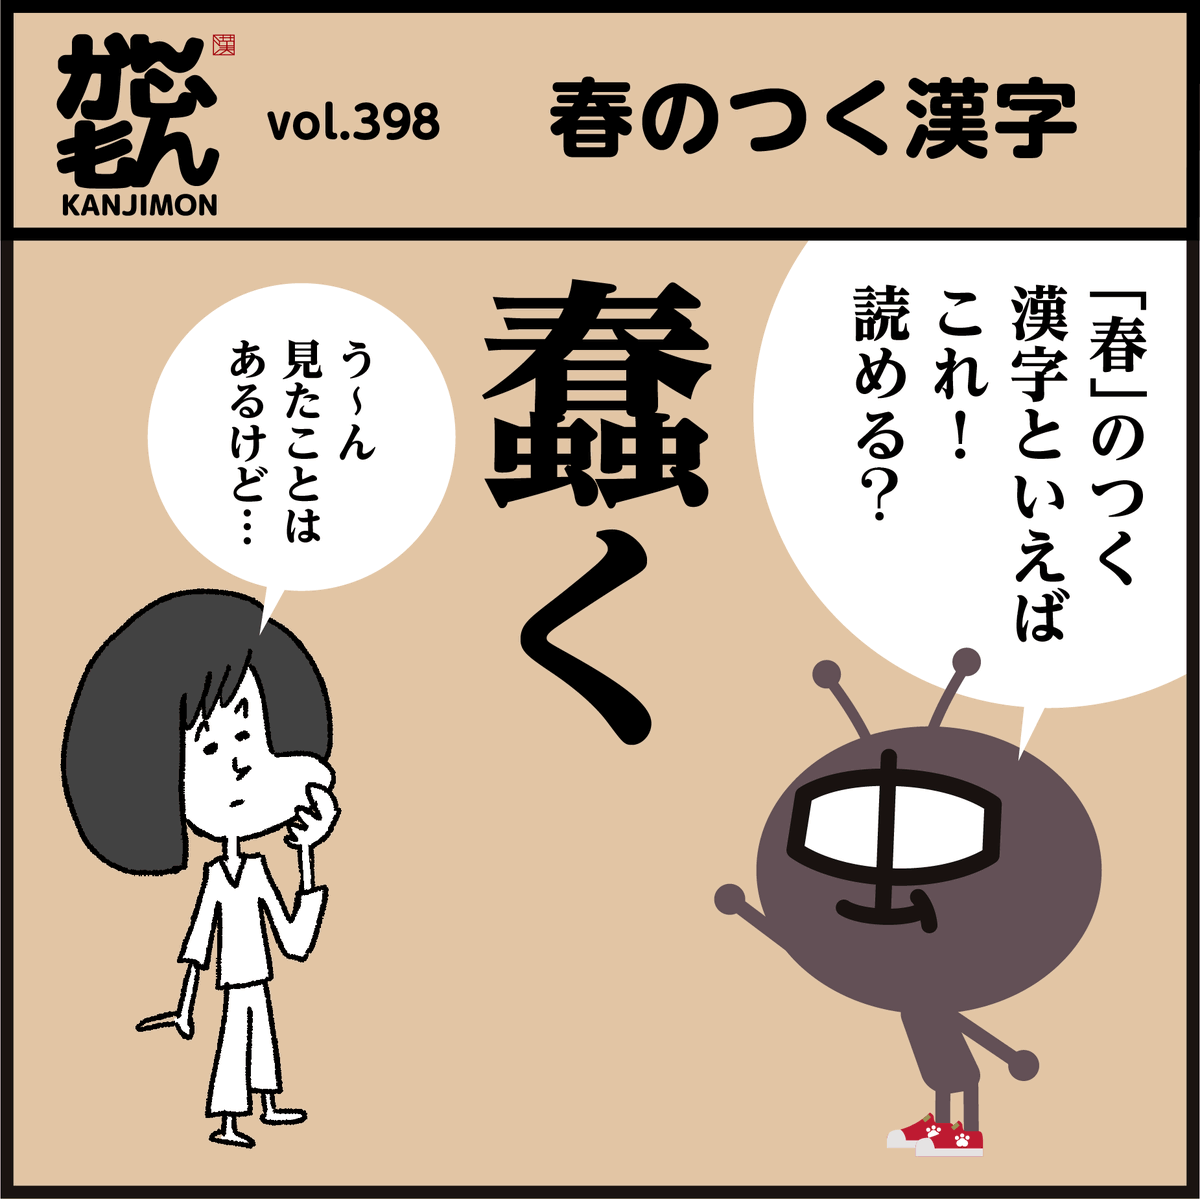 🤔【蠢く】【鰆】読める?
春の付く漢字。4コマ漫画。
#イラスト #クイズ #豆知識 